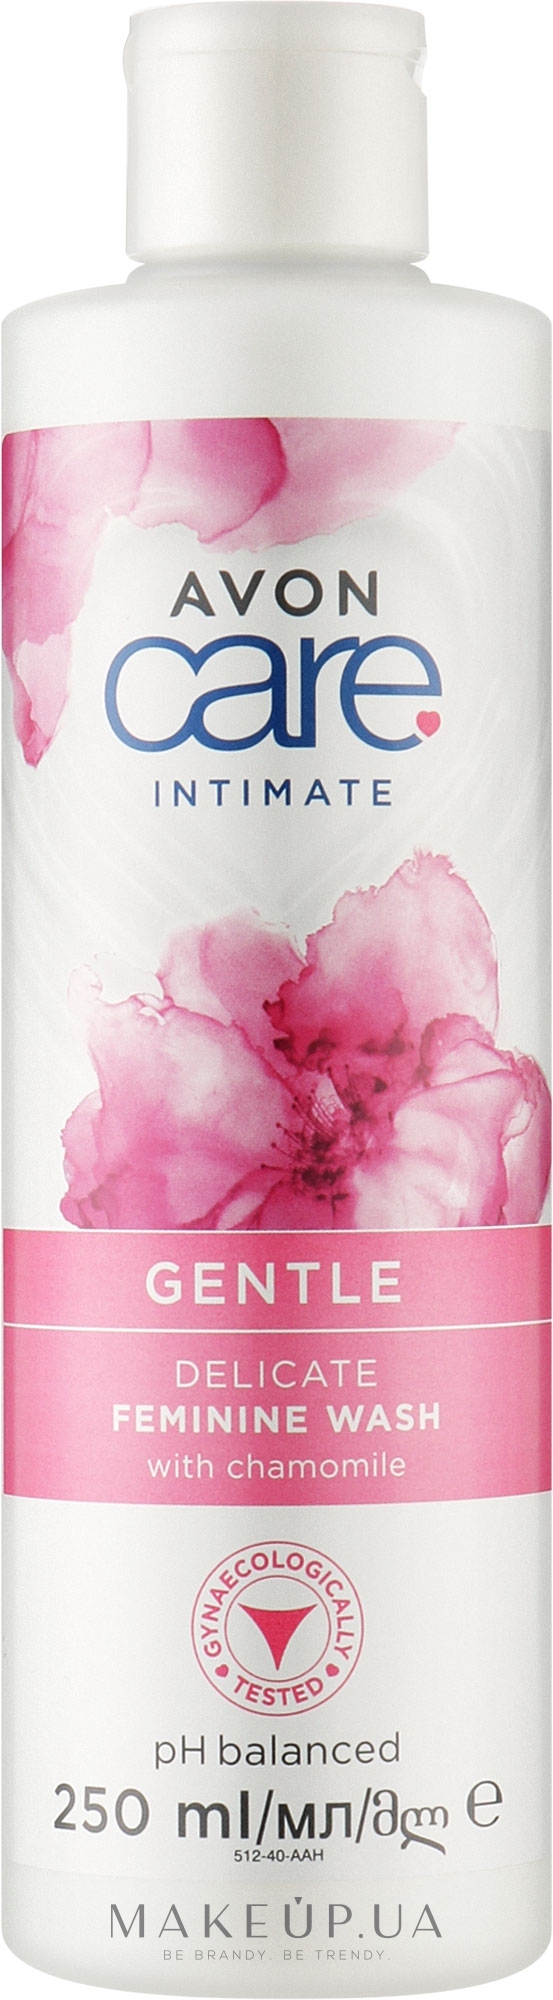 Засіб для інтимної гігієни з екстрактом ромашки - Avon Care Intimate Gentle Delicate Feminine Wash — фото 250ml